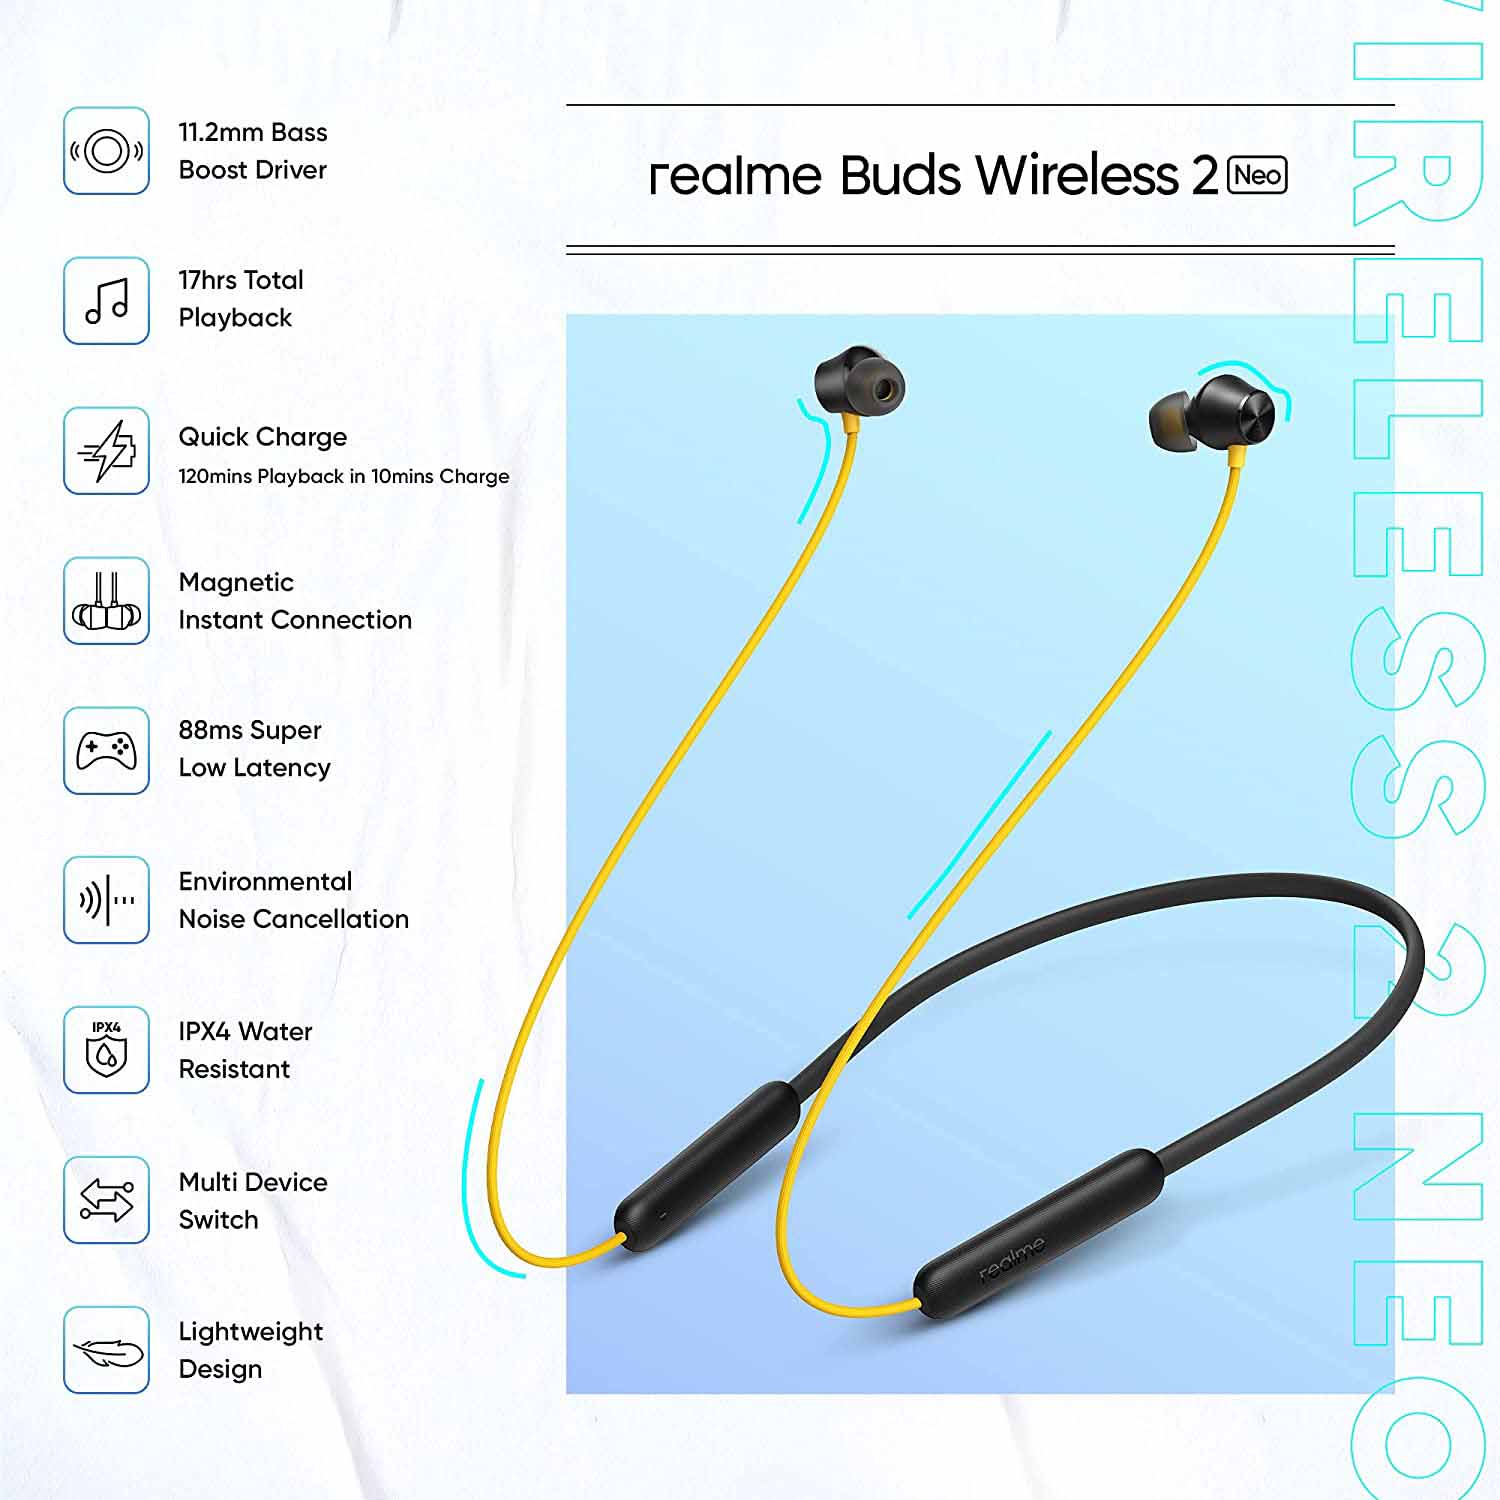 realme buds wireless 2 neo 6